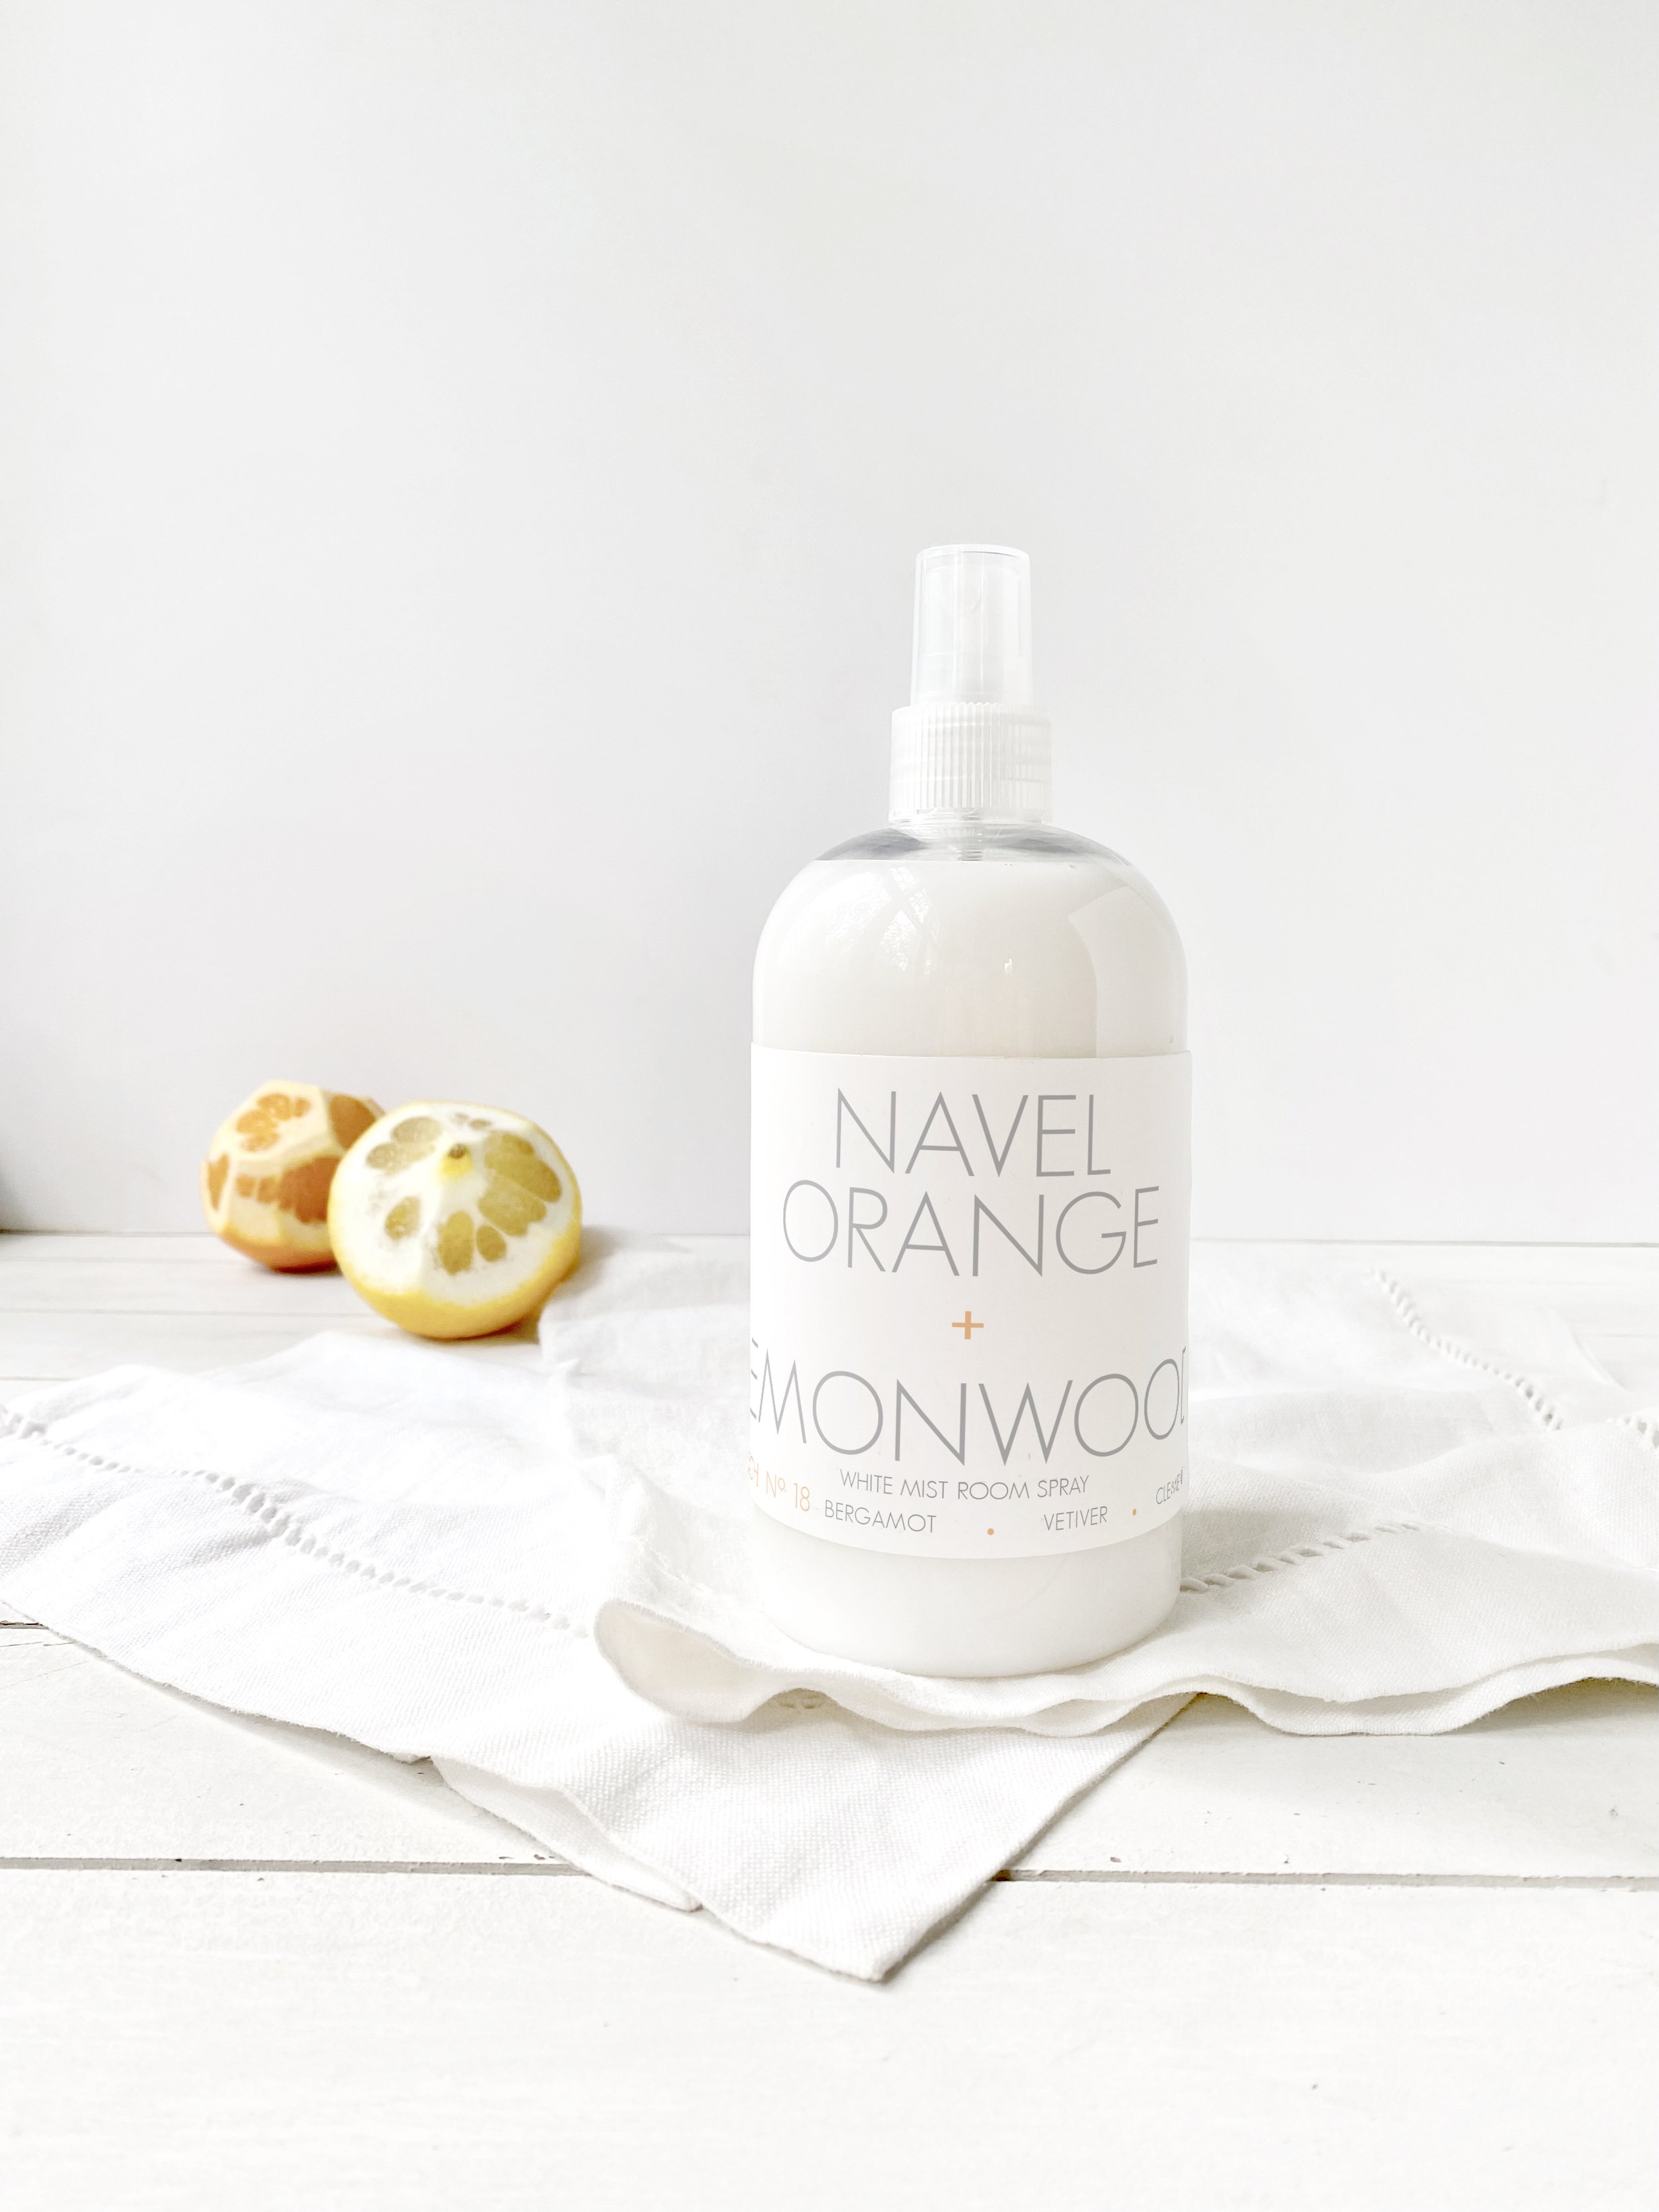 Navel Orange + Lemonwood White Mist Room Spray with lemons + oranges RICA bath + body LIGHT.jpg